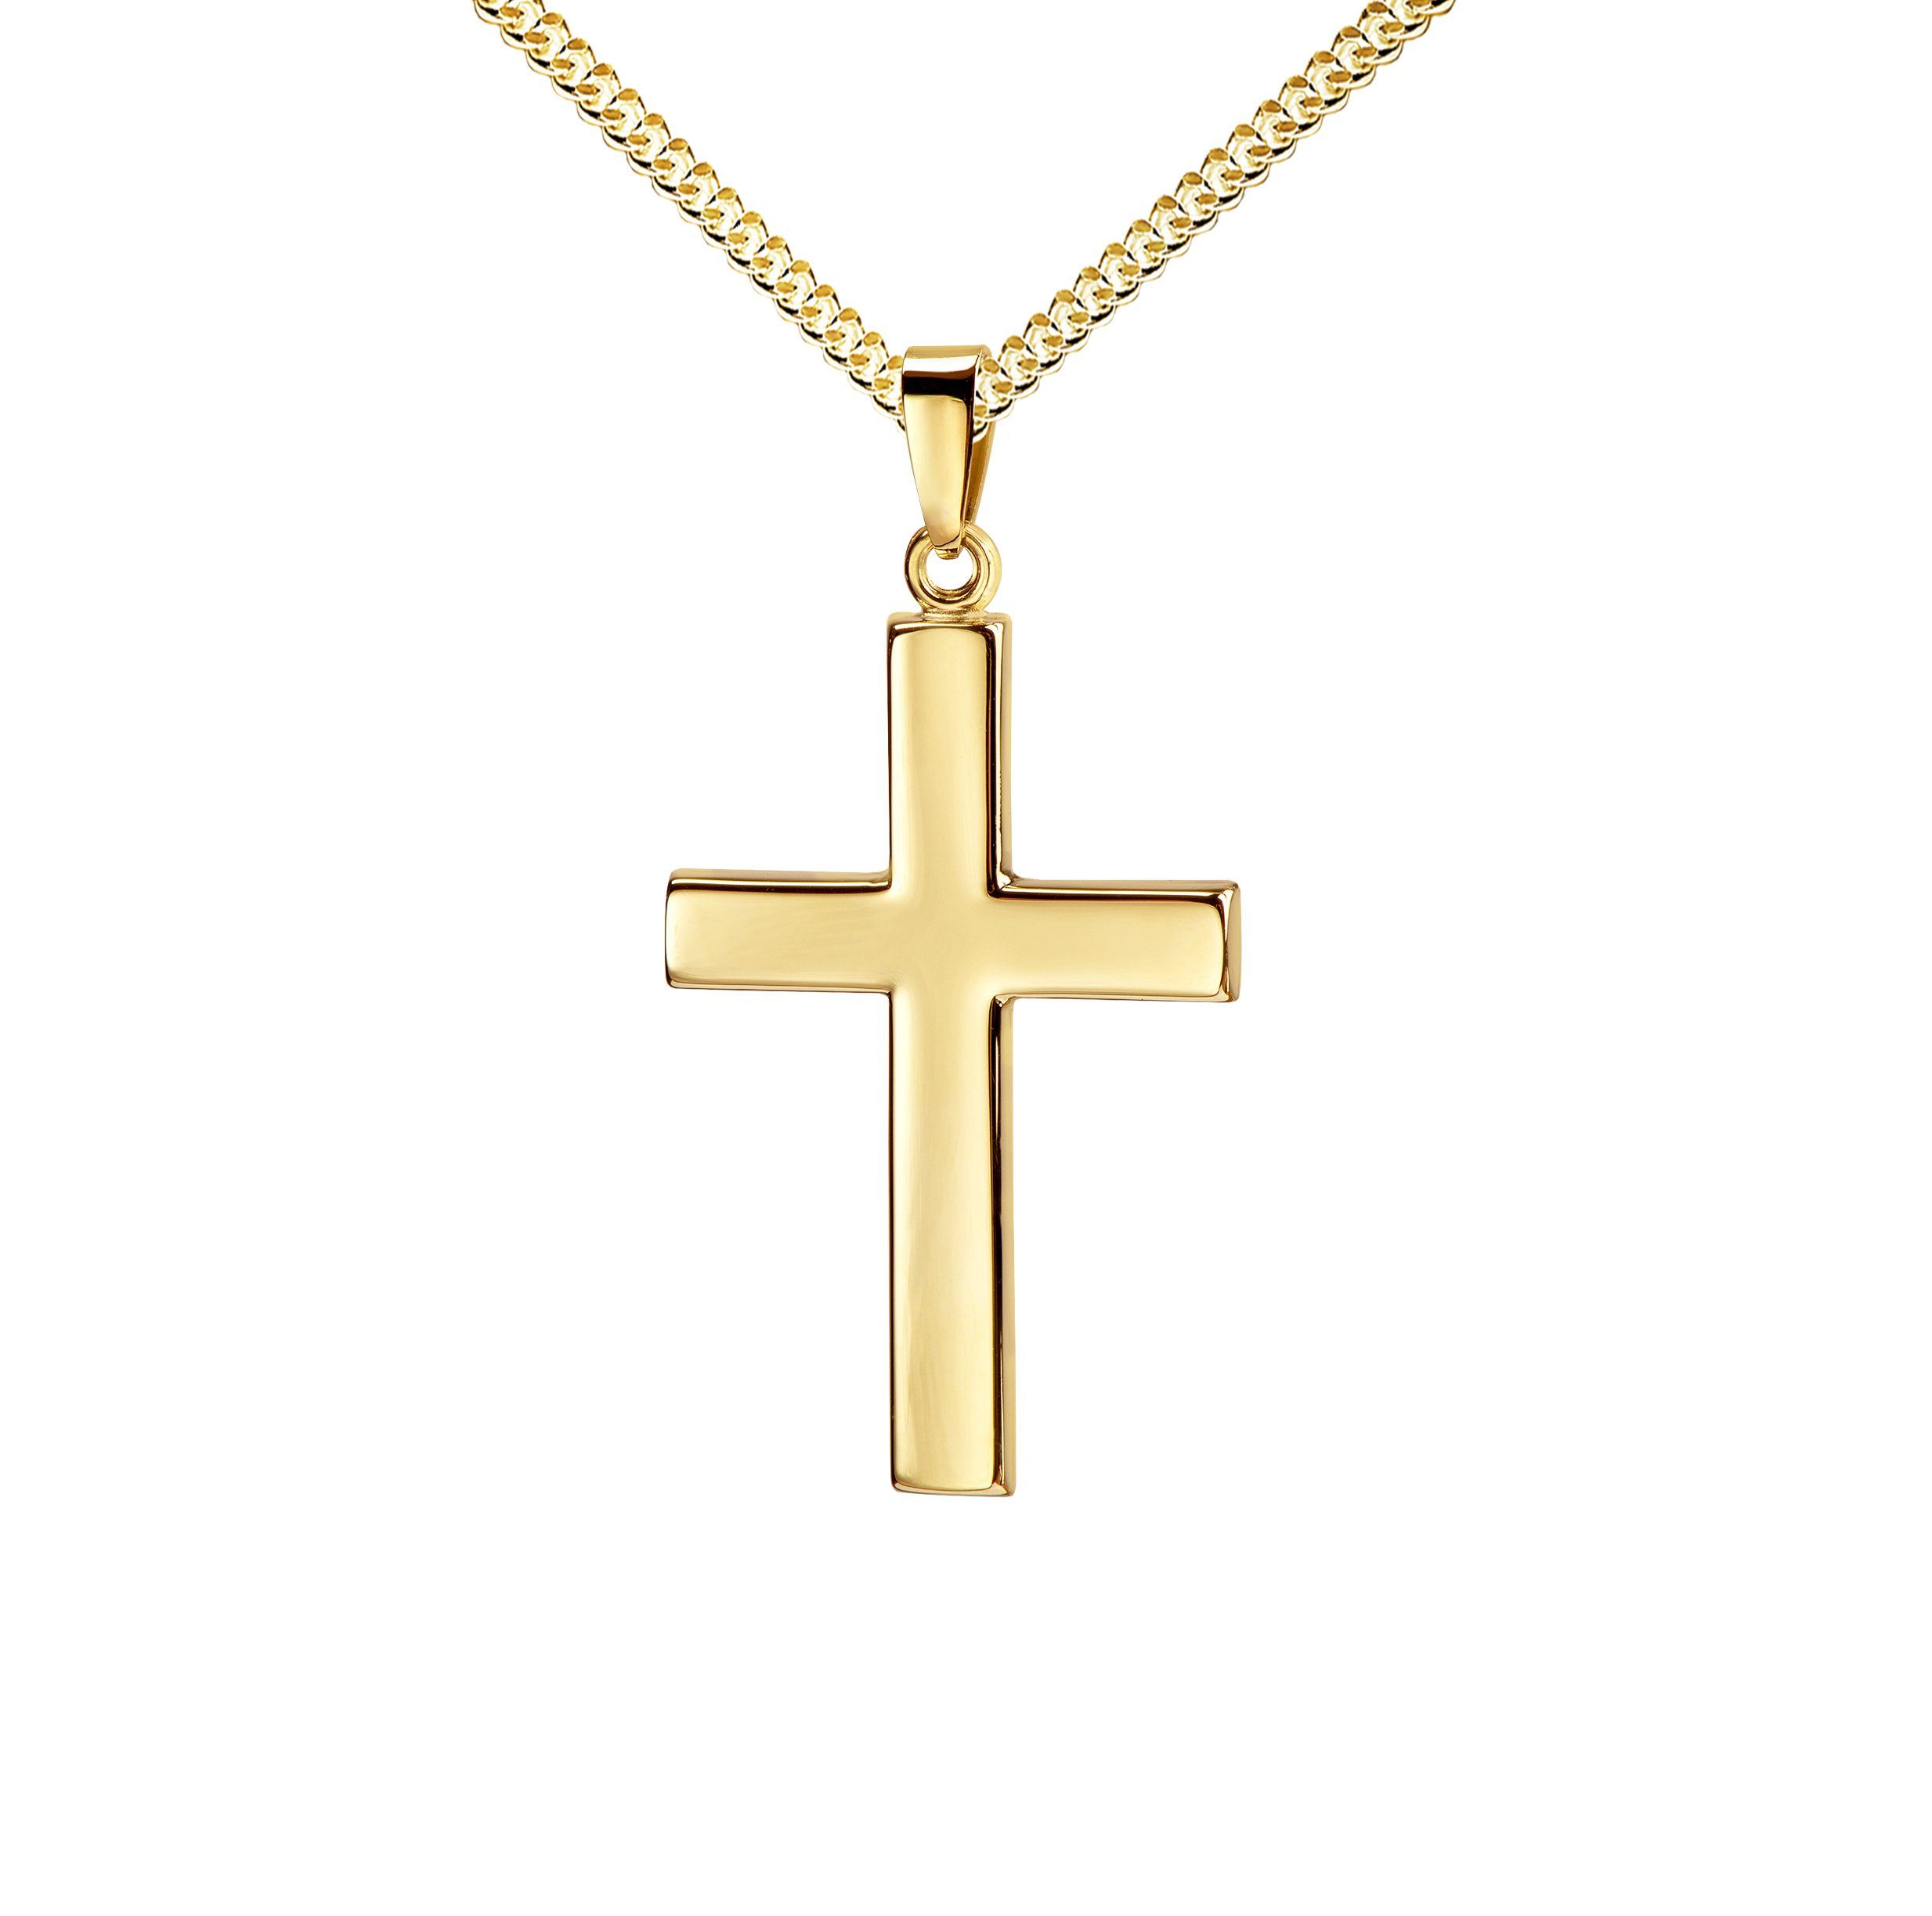 JEVELION Kreuzkette großer Kreuzanhänger 333 Gold - Made in Germany (Goldkreuz, für Damen und Herren), Mit Kette vergoldet- Länge wählbar 36 - 70 cm oder ohne Kette.